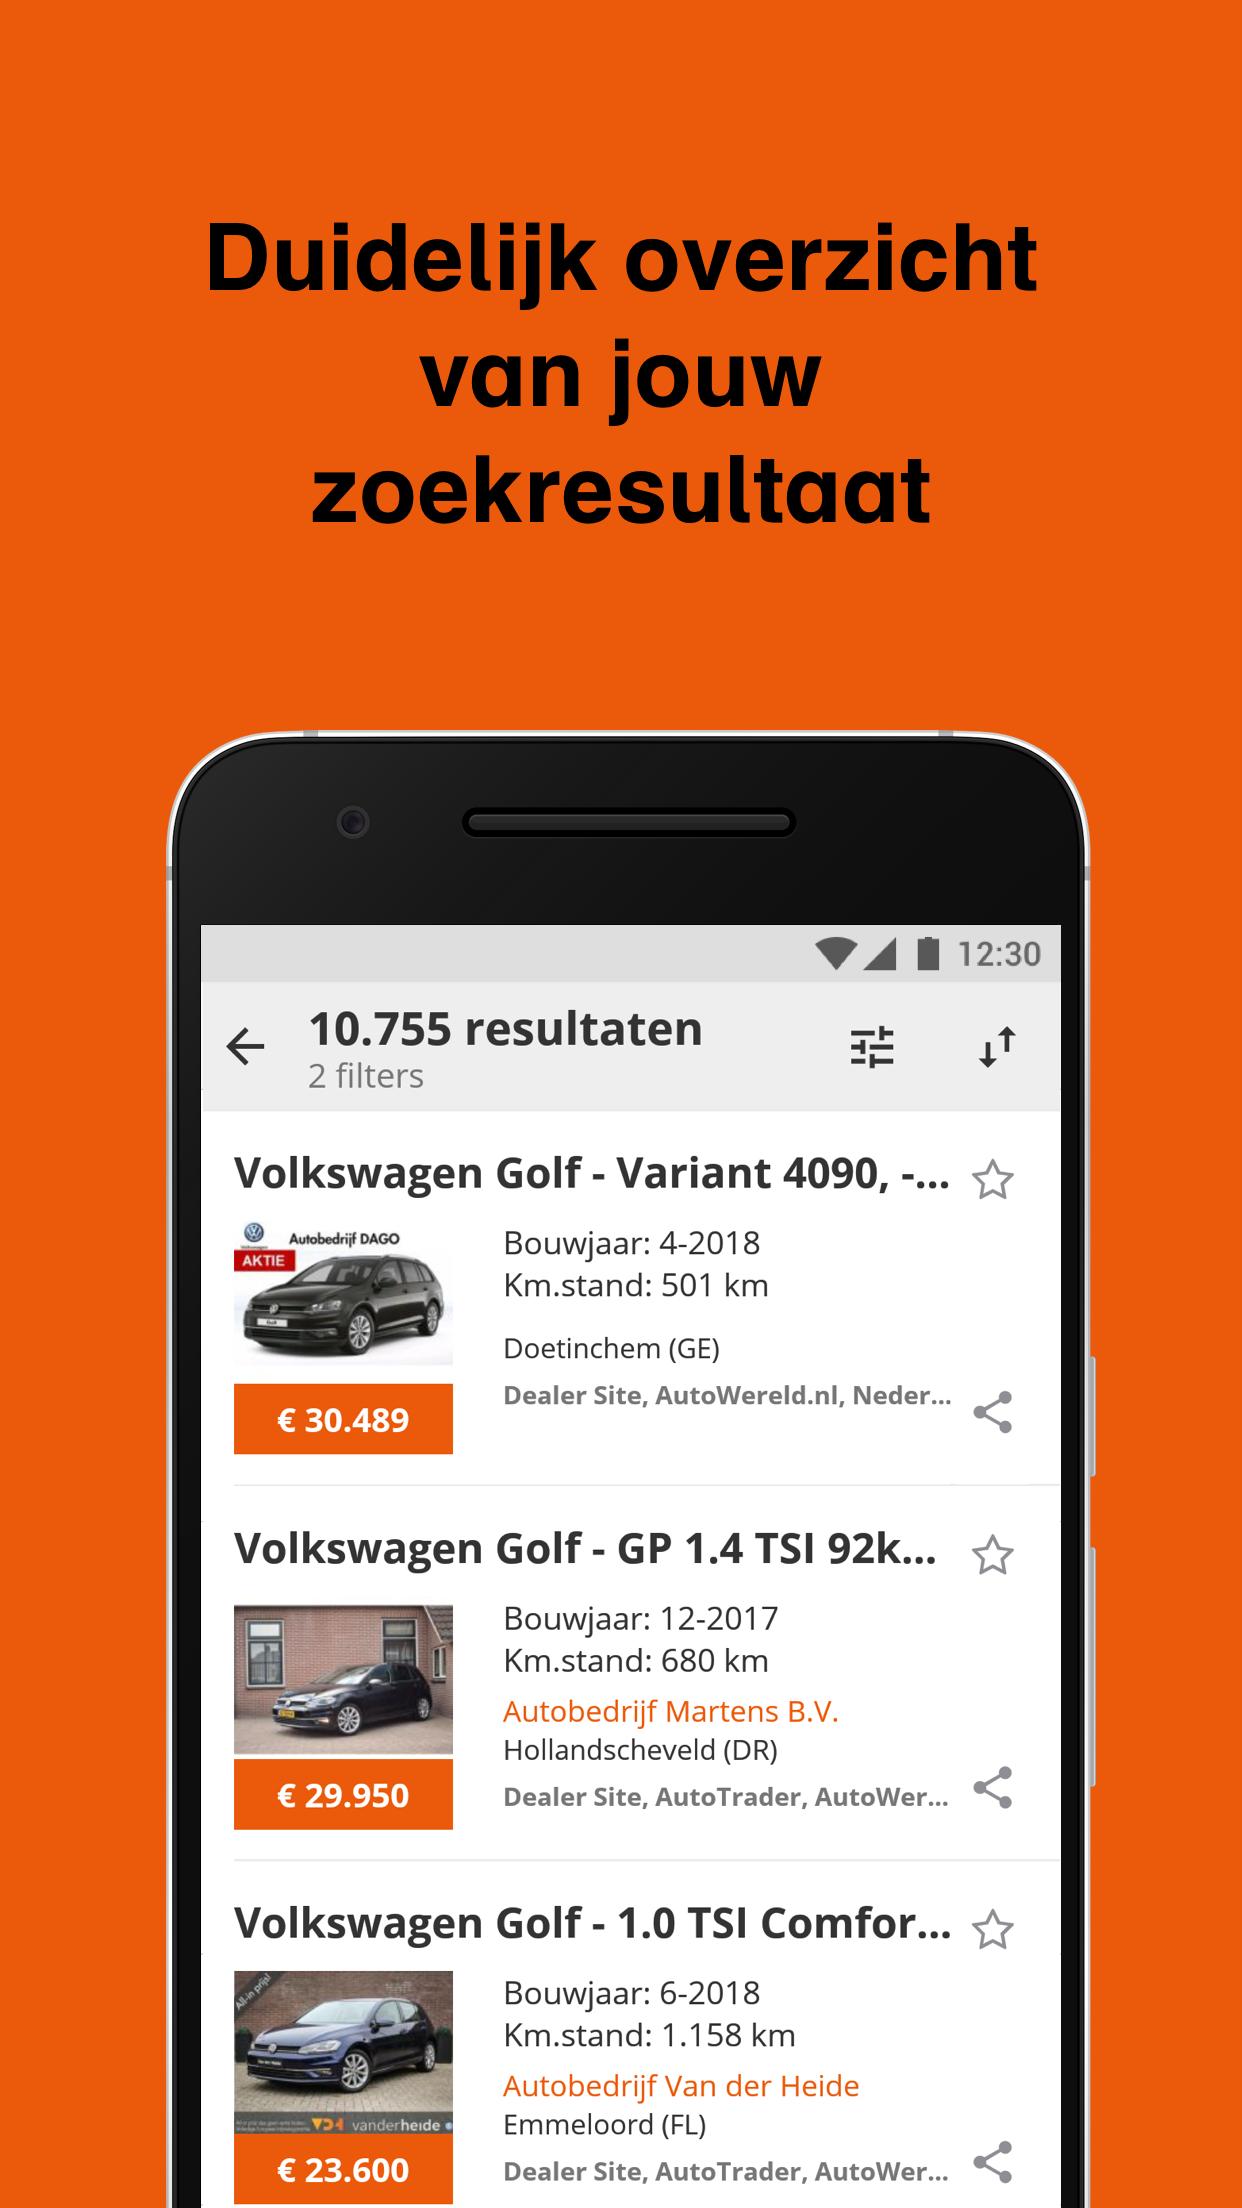 Reusachtig Dicteren bijgeloof GasPedaal.nl - Tweedehands auto zoeken en kopen for Android - APK Download